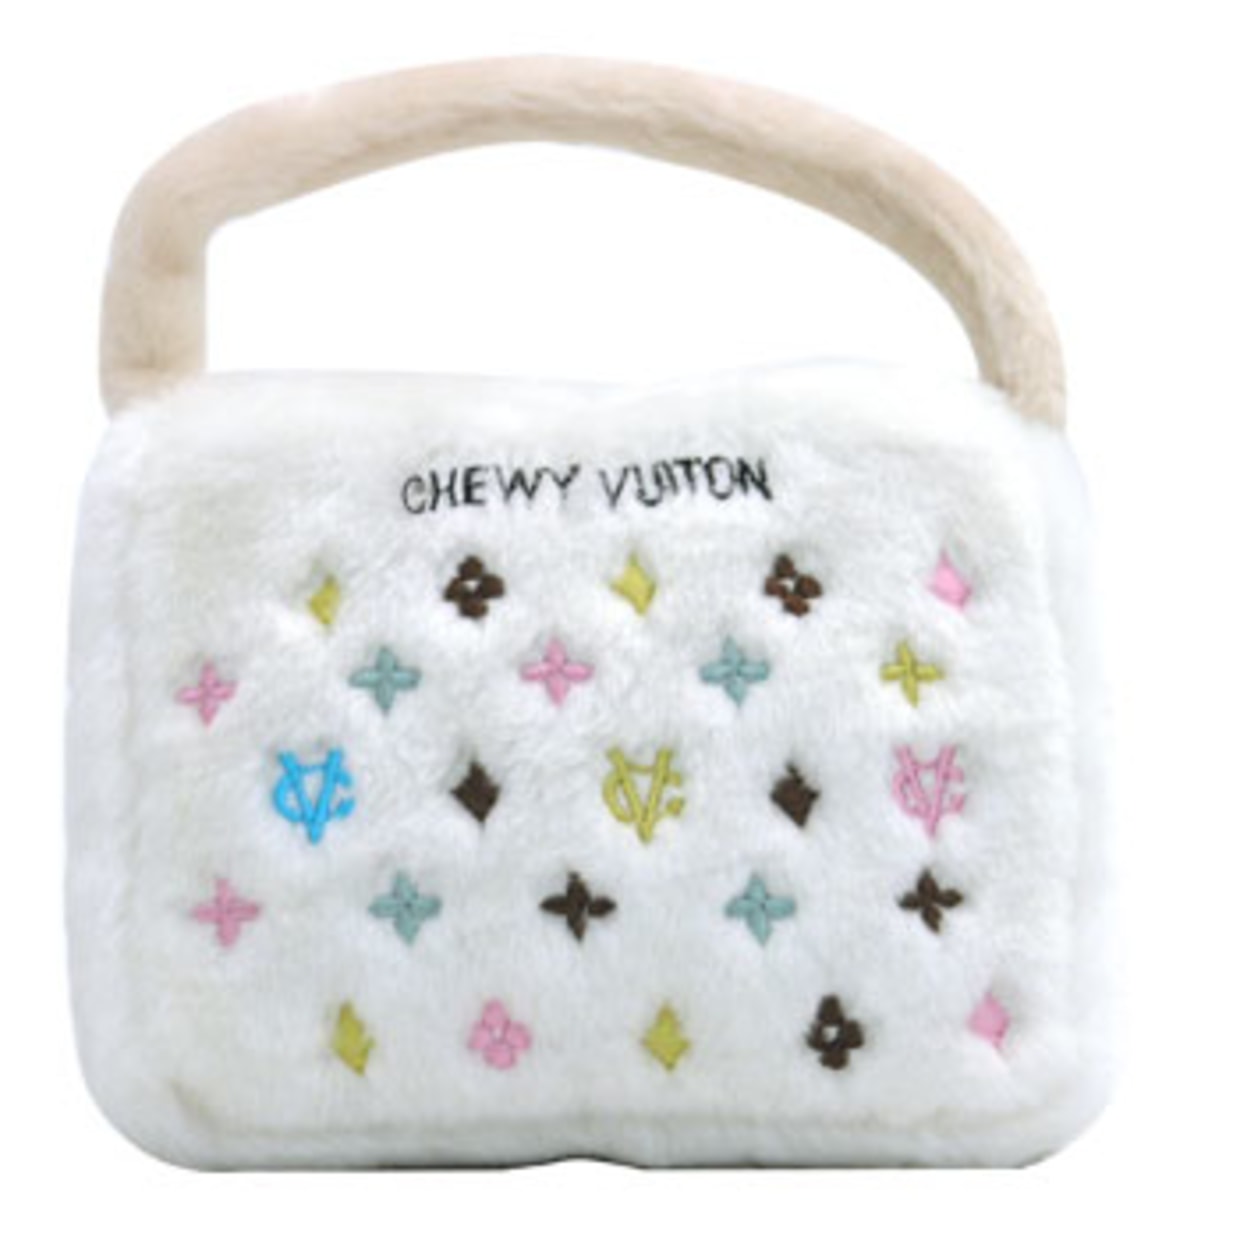 Pooey Puitton toy purse makers file lawsuit against Louis Vuitton